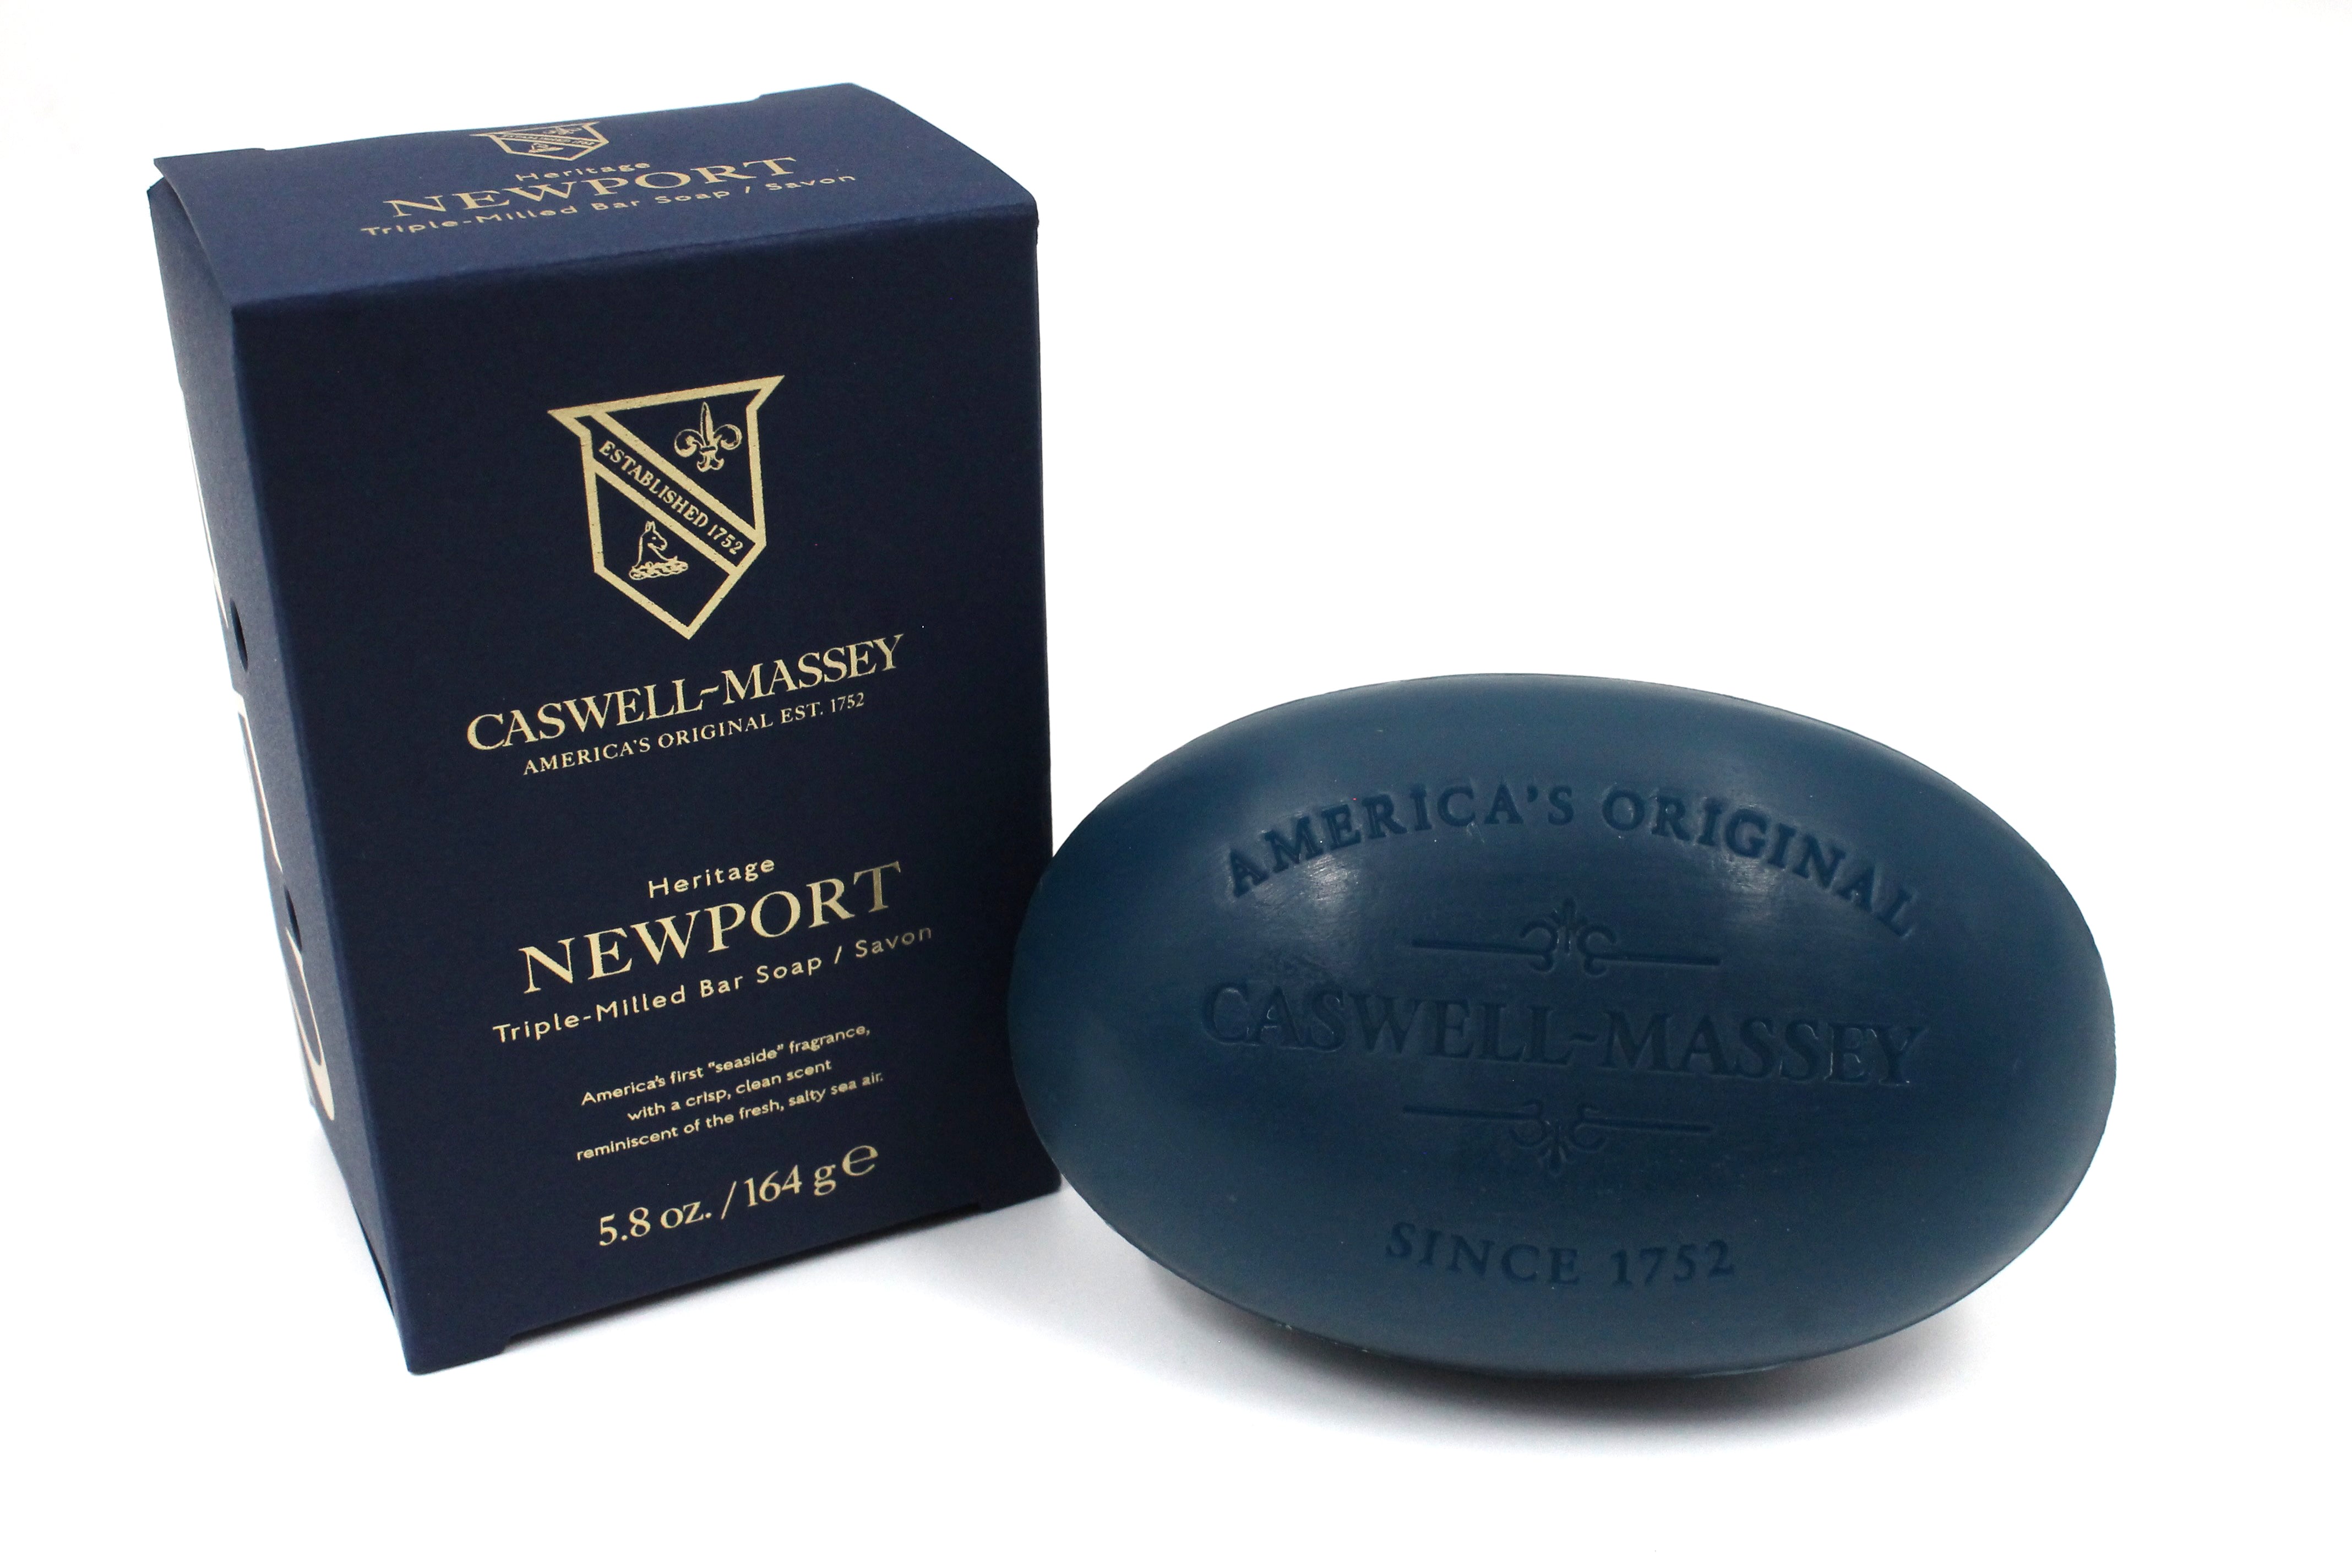 Caswell Massey Newport Bar Soap